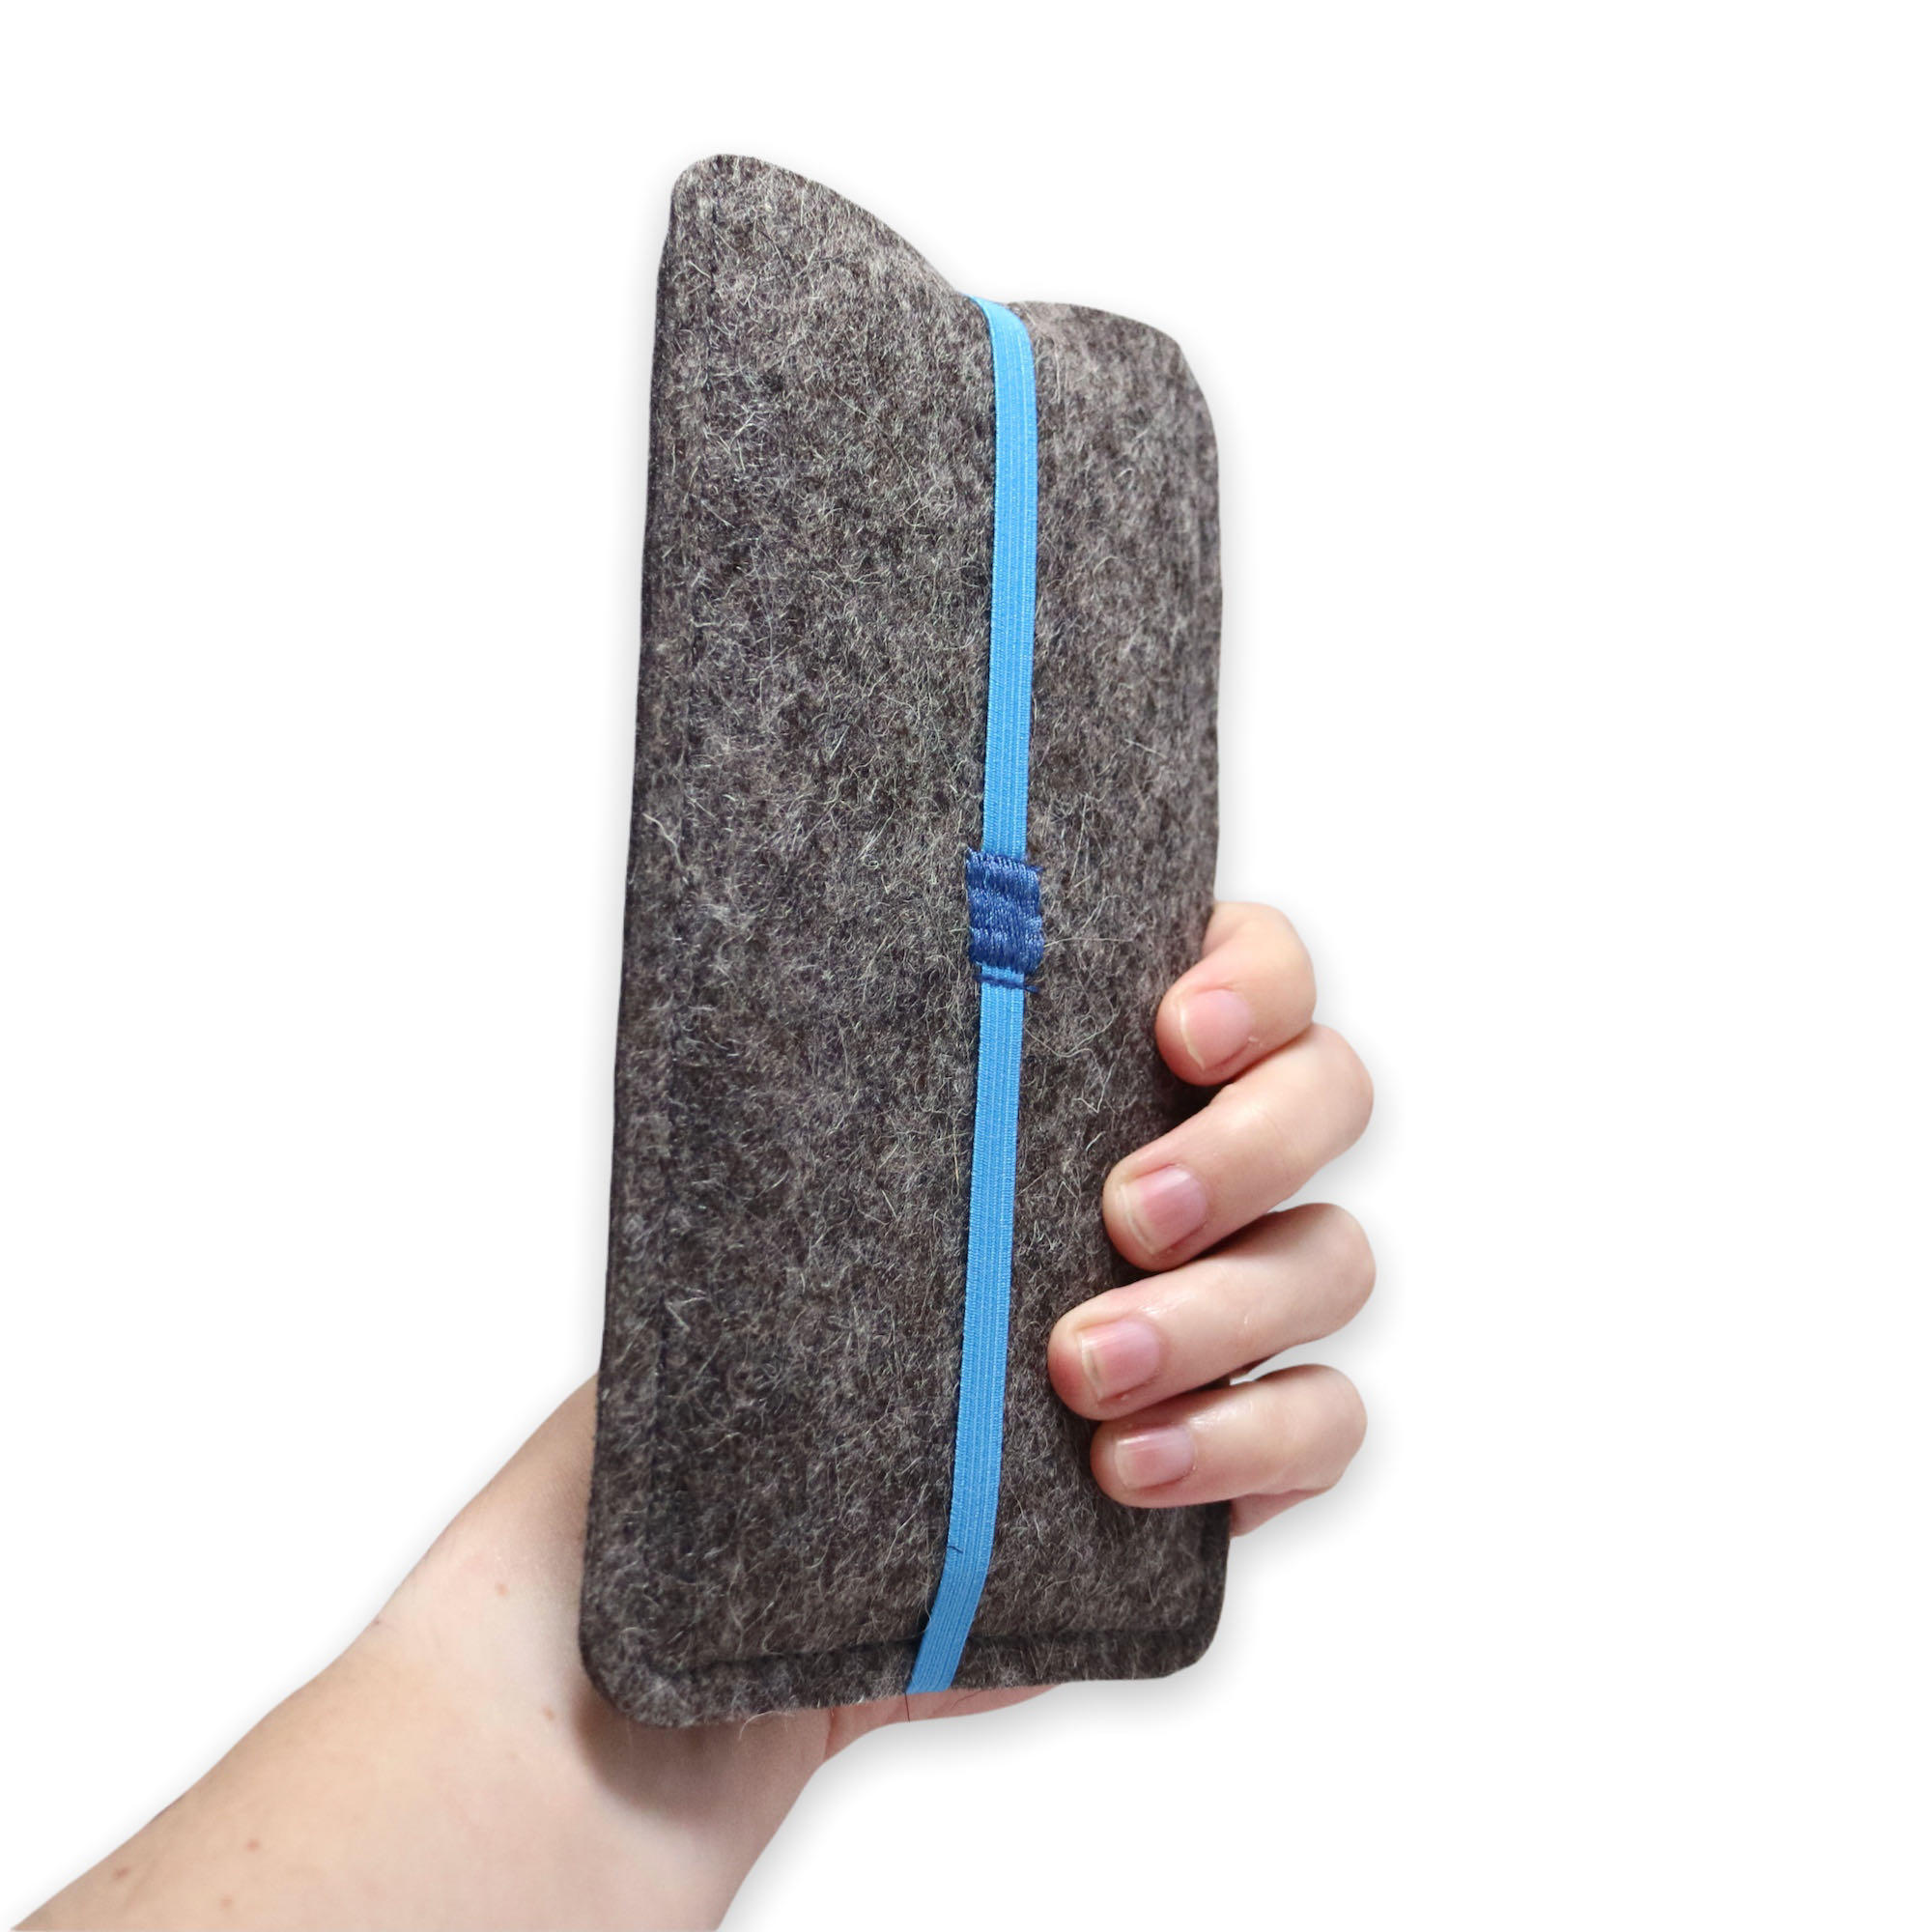 Filz Handytasche mit Gummiband - maßgeschneidert für dein Handymodell -  Handyhüllen aus Filz 